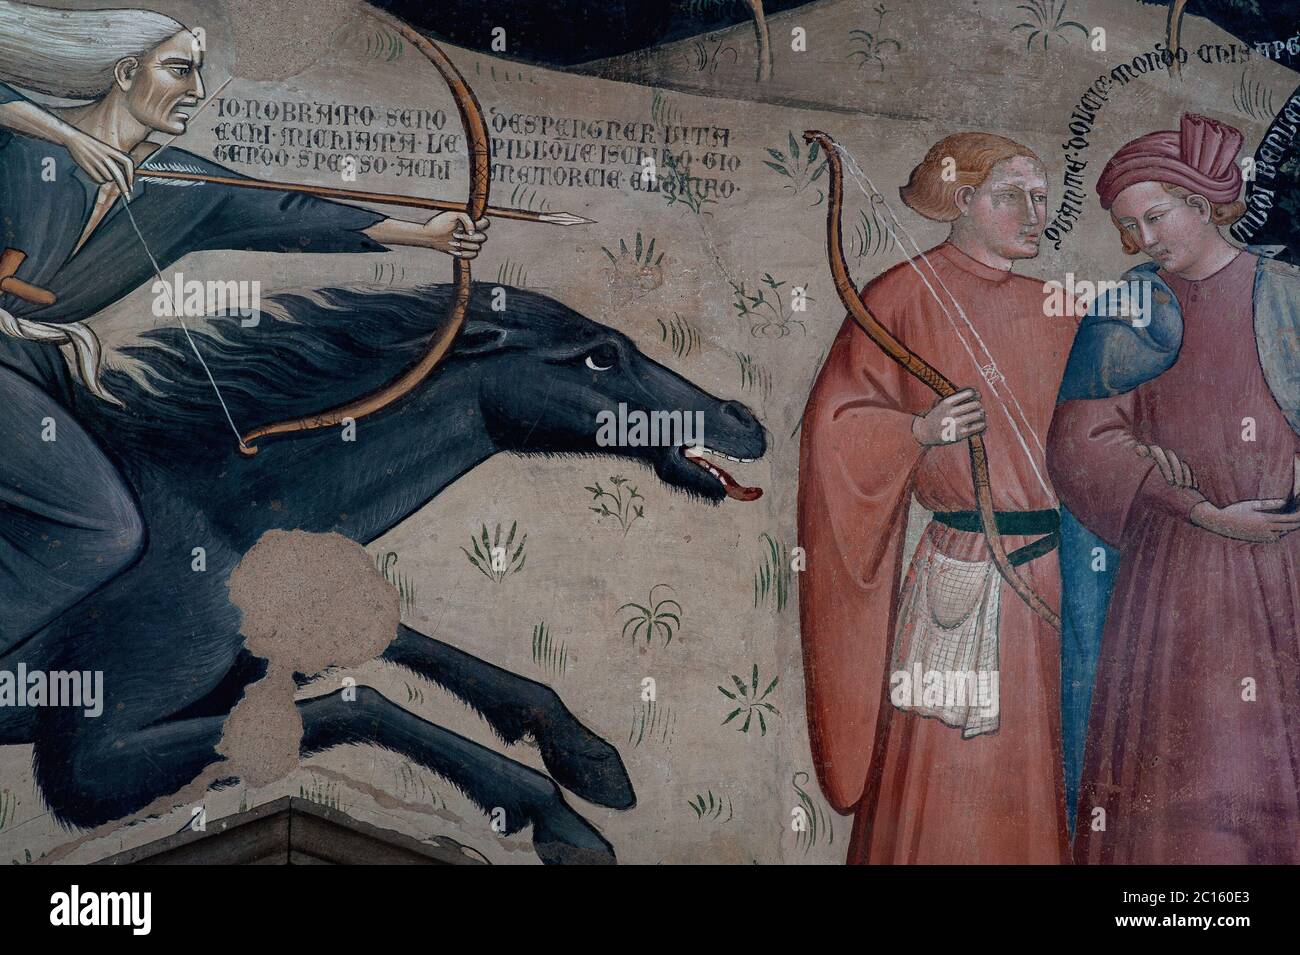 Der Grim Reaper, der bareback auf einem schwarzen Pferd reitet, stellt die Pest-Pandemie des Schwarzen Todes dar, die über 1300s Europa hinwegfegt, während er einen Pfeil auf zwei ahnungslose Jäger edler Geburt richtet. Triumph des Todes Fresko, gemalt um 1380, von Sieneser Maler Bartolo di Fredi (c. 1330-1410). In der Chiesa di San Francesco in Lucignano, Toskana, Italien. Stockfoto